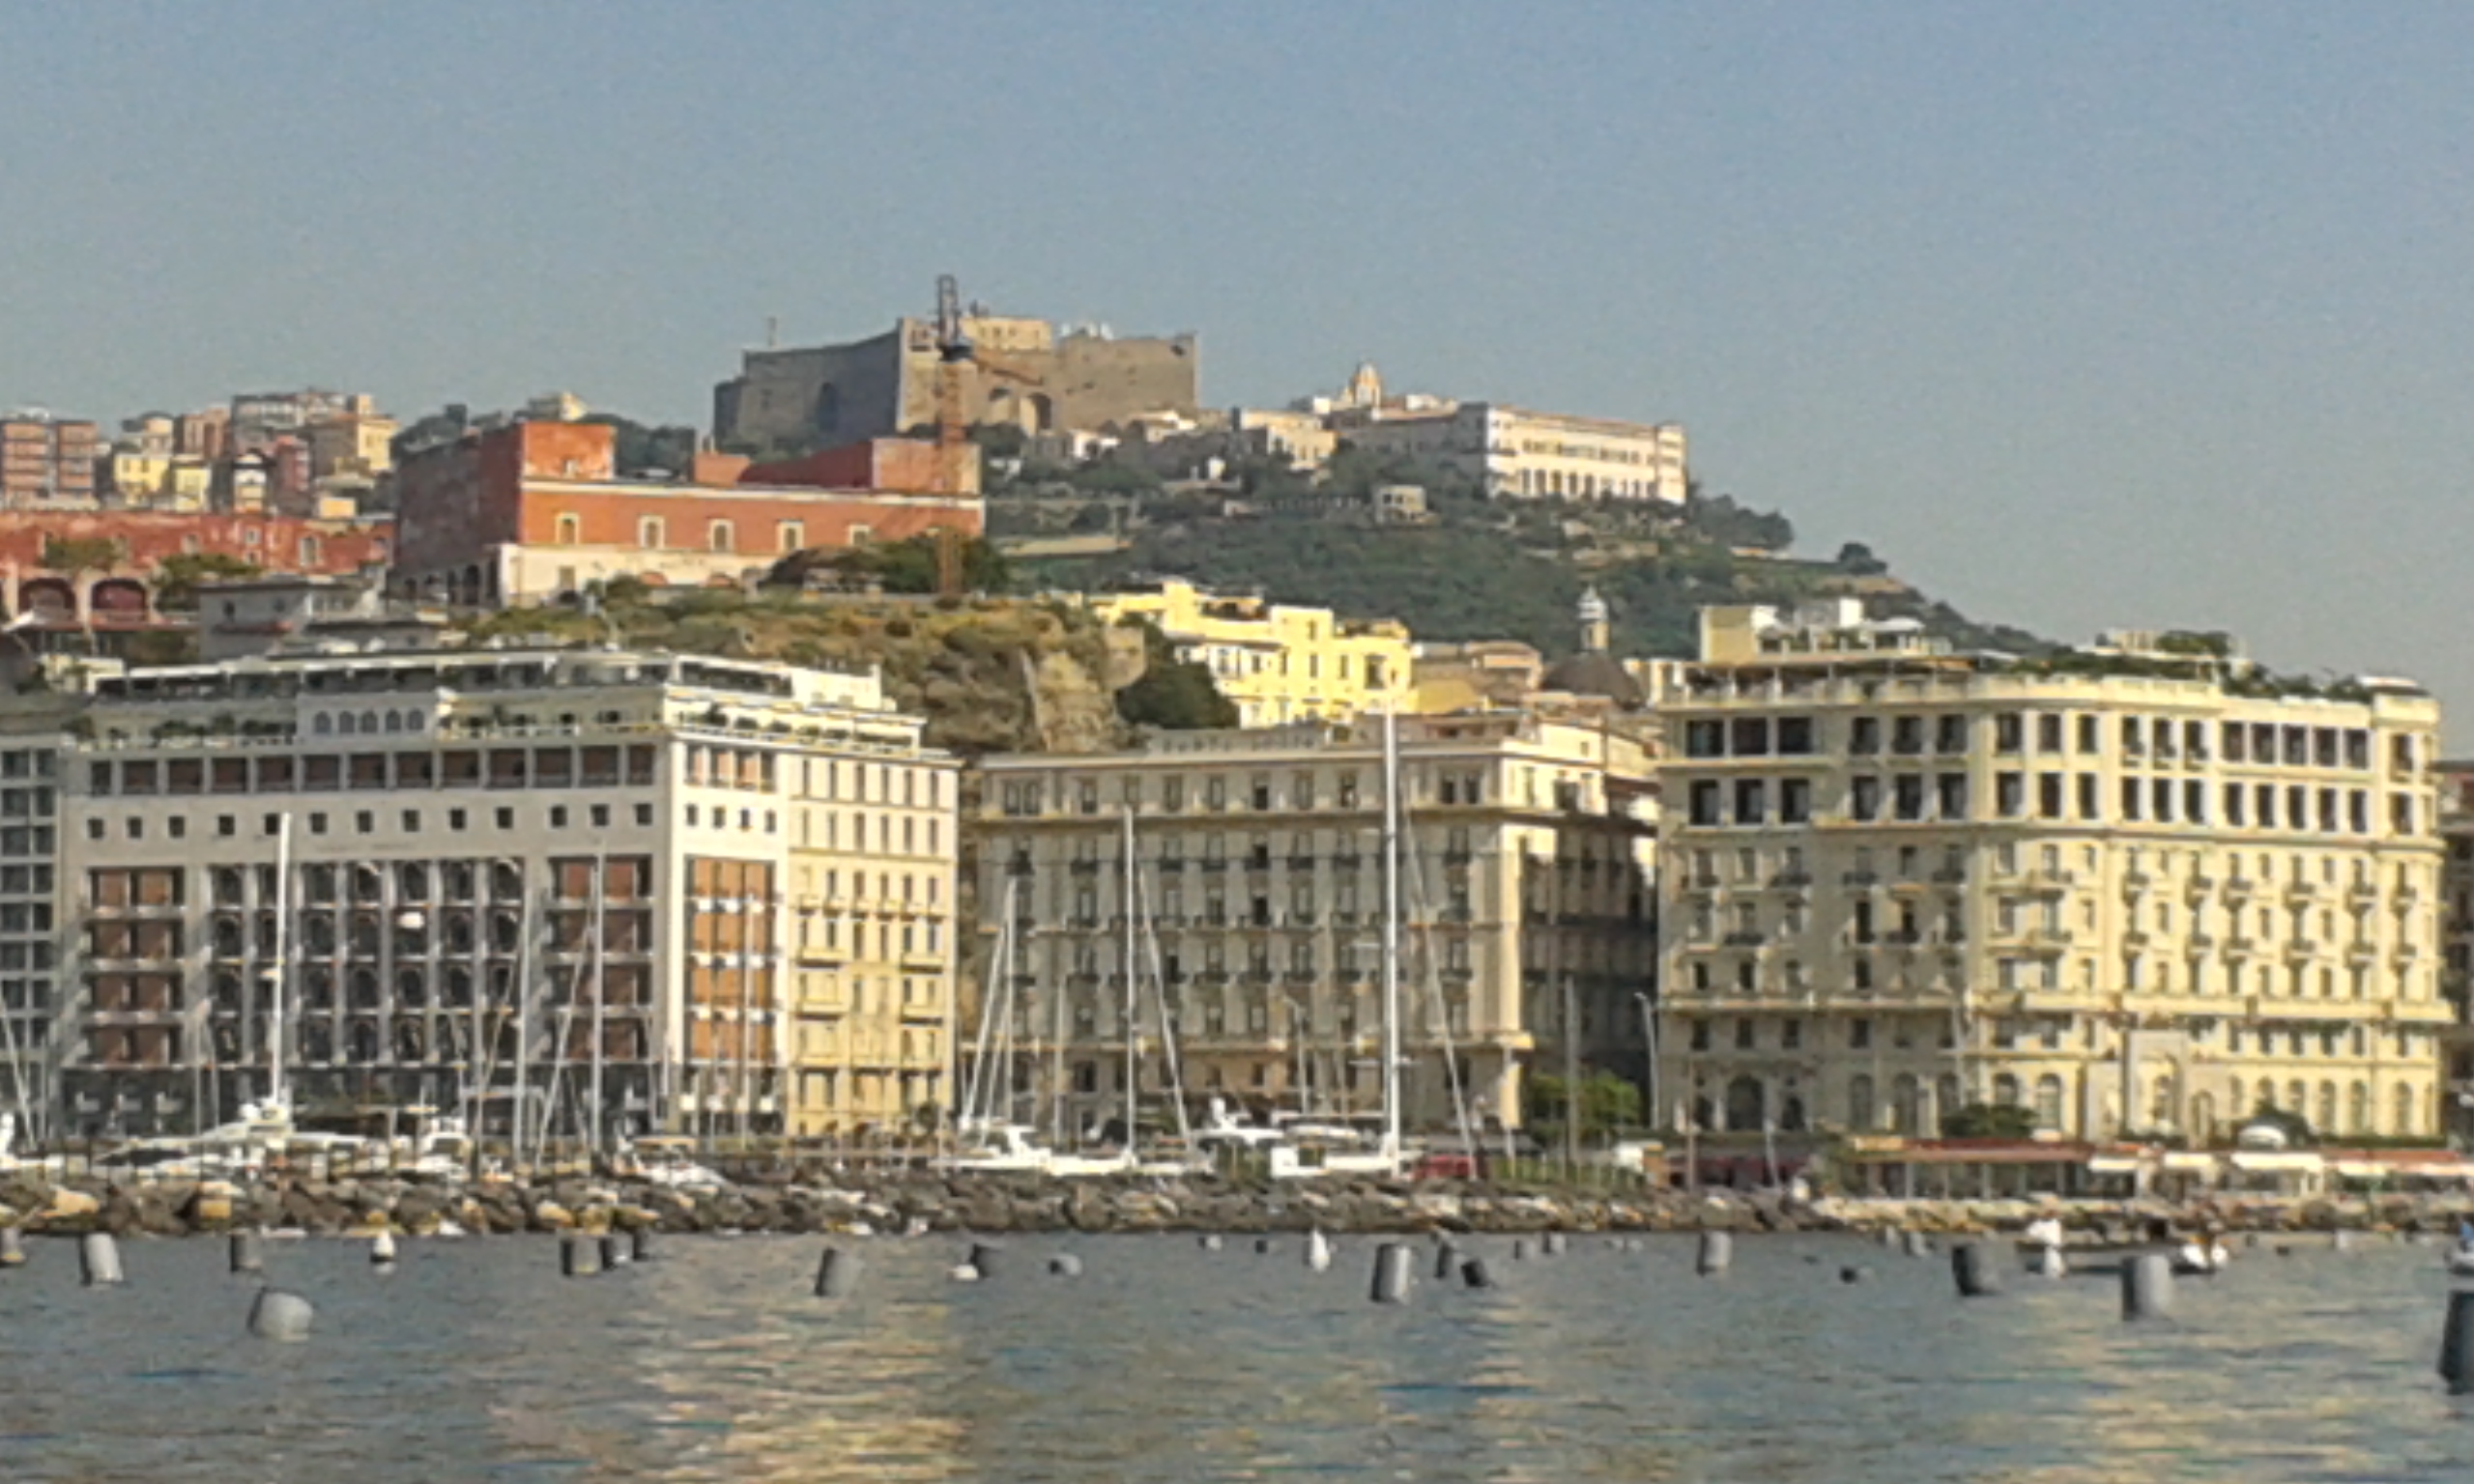 Les hotels en bord de mer, sur la colline San Martino et Castel Sant Elmo